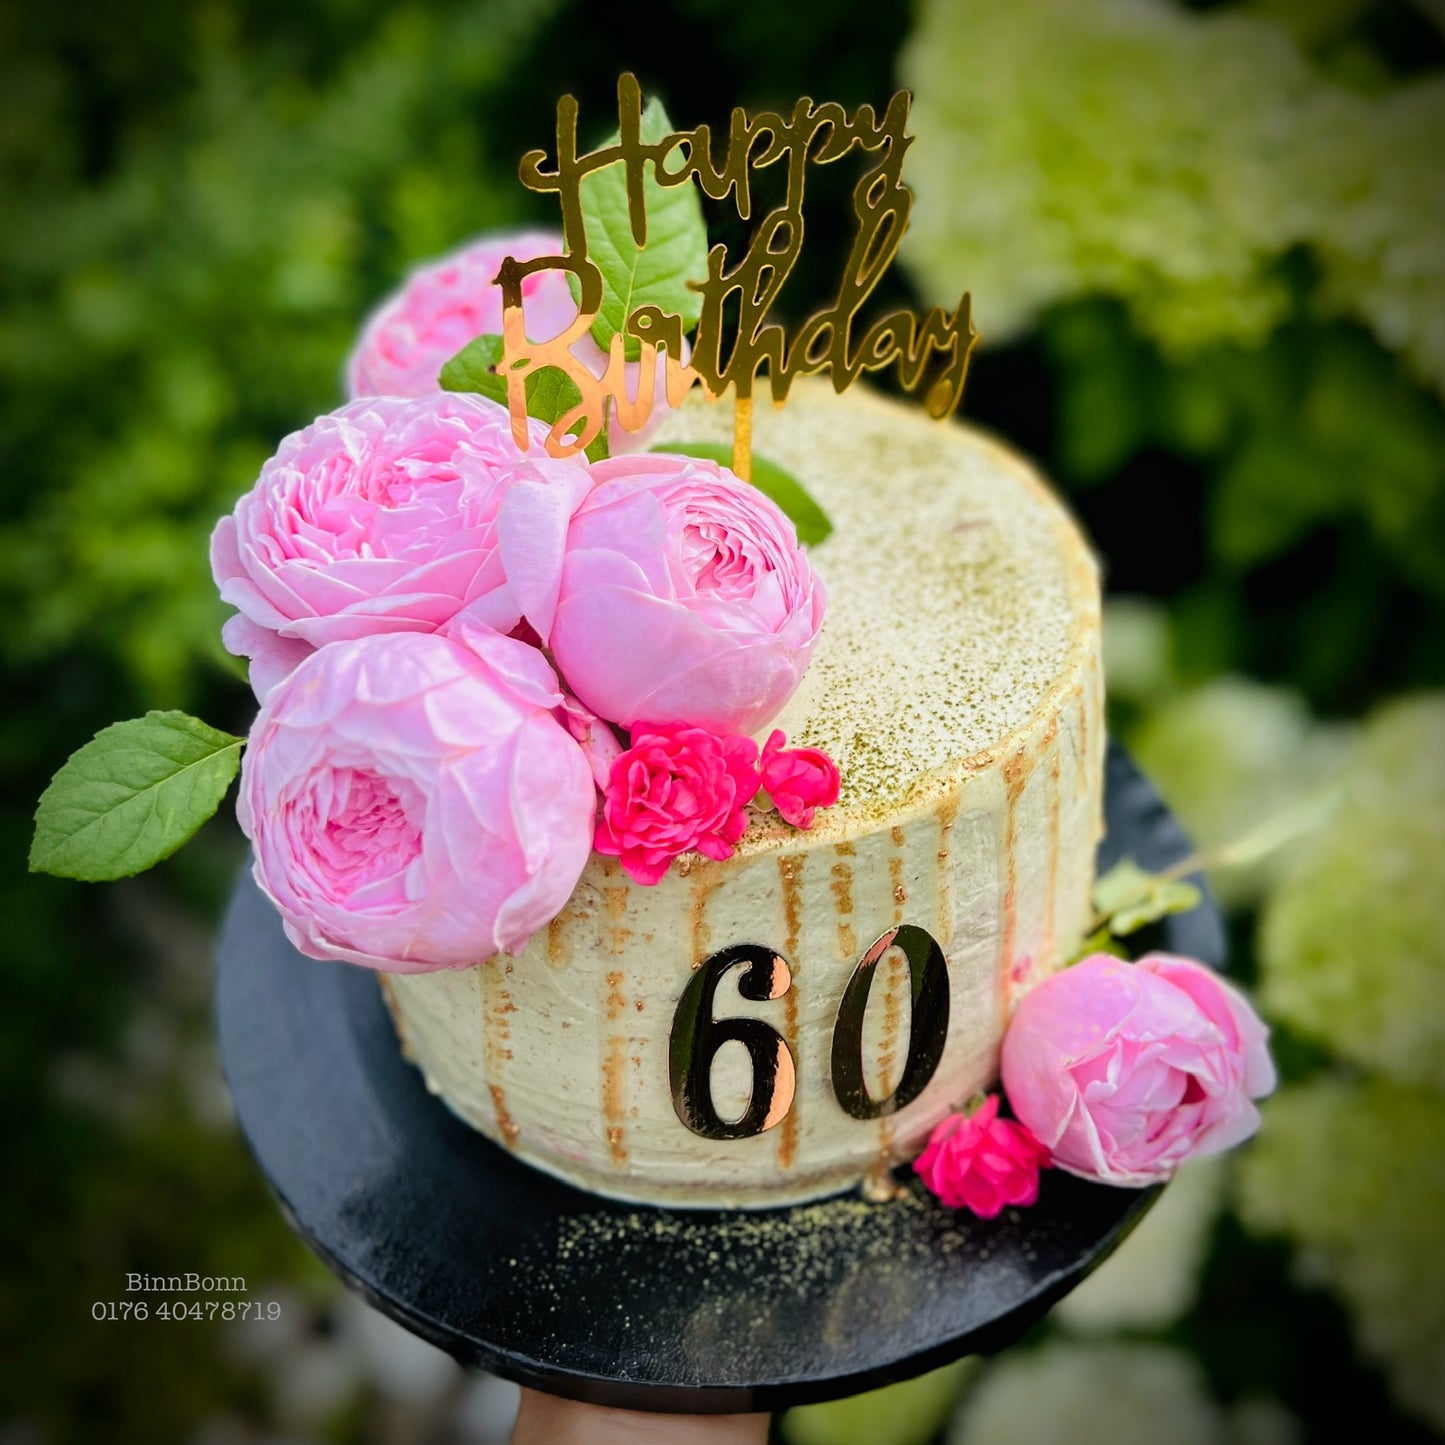 4. Torte "Spirit" zum Geburtstag mit frischen Rosen, Früchten und Matcha 22 cm